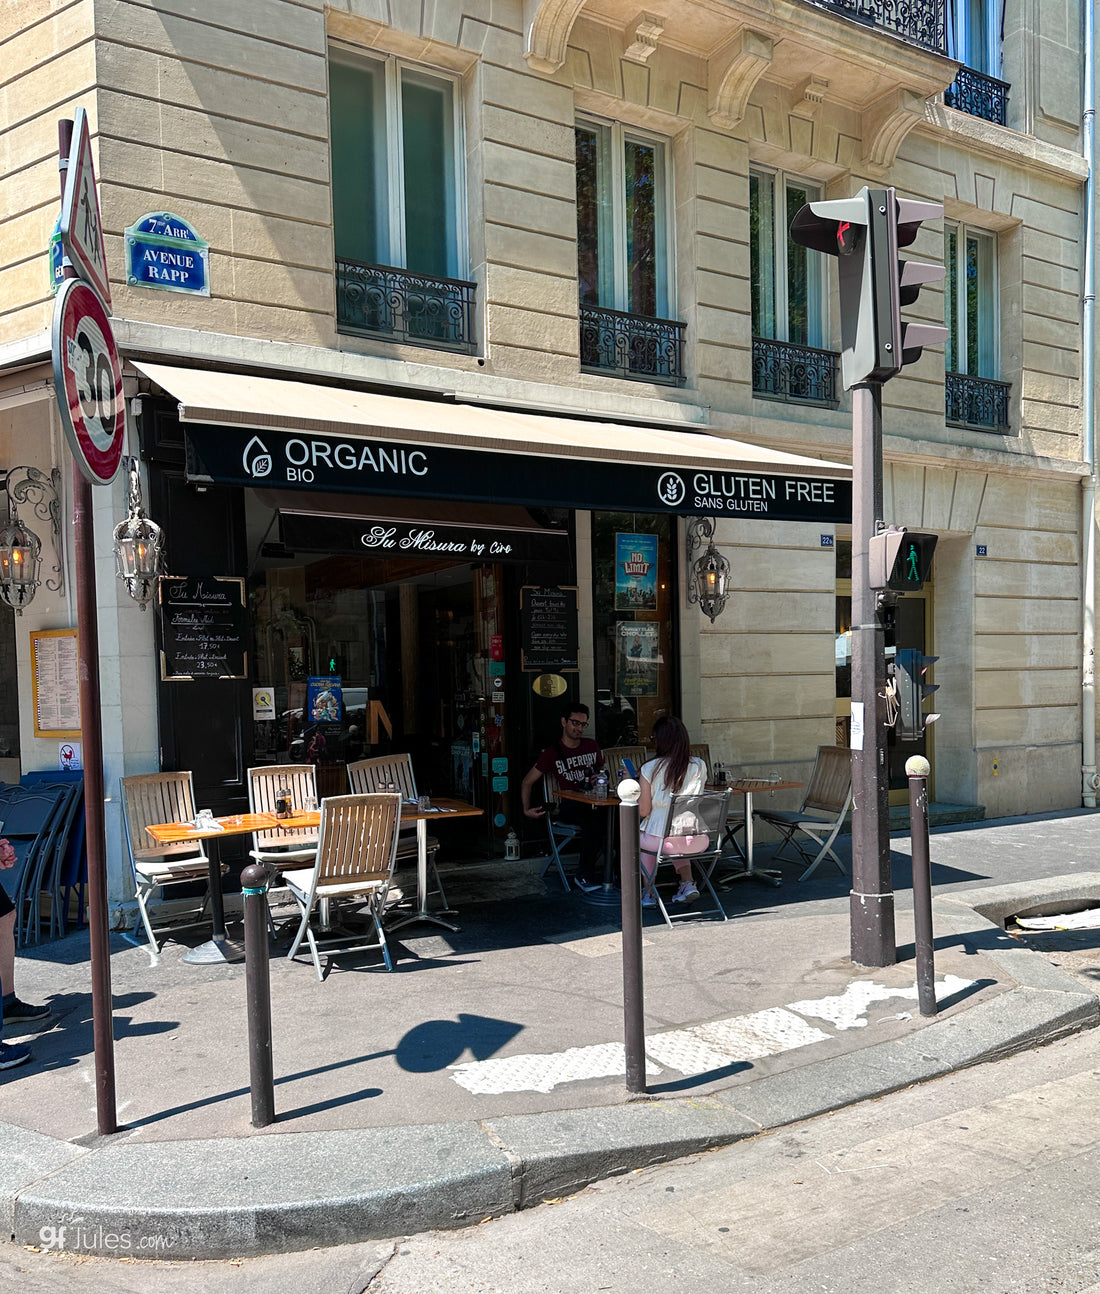 Where to Find Gluten Free in Paris